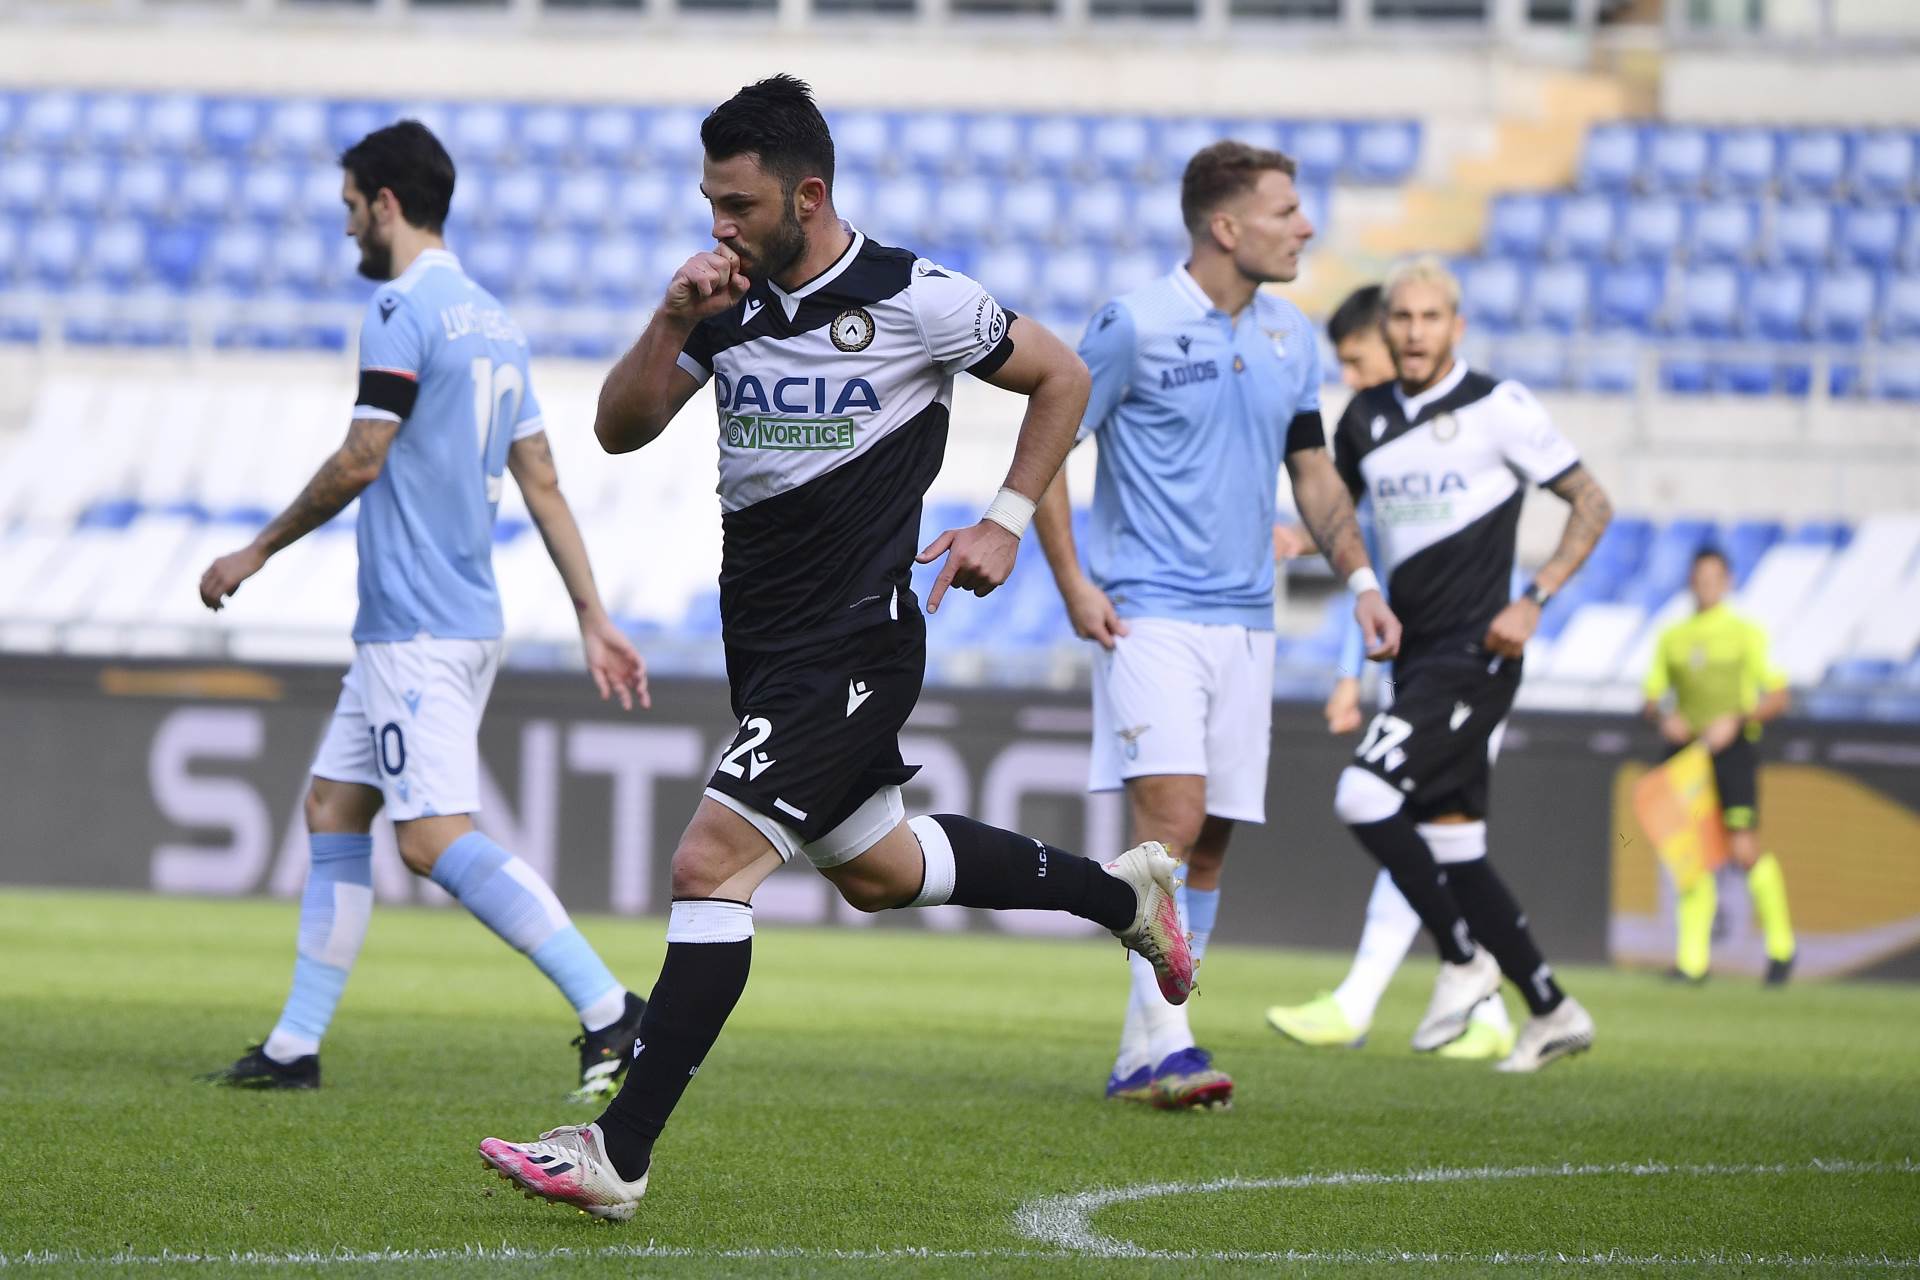  Serija A 9 kolo Lacio - Udineze 1-3 